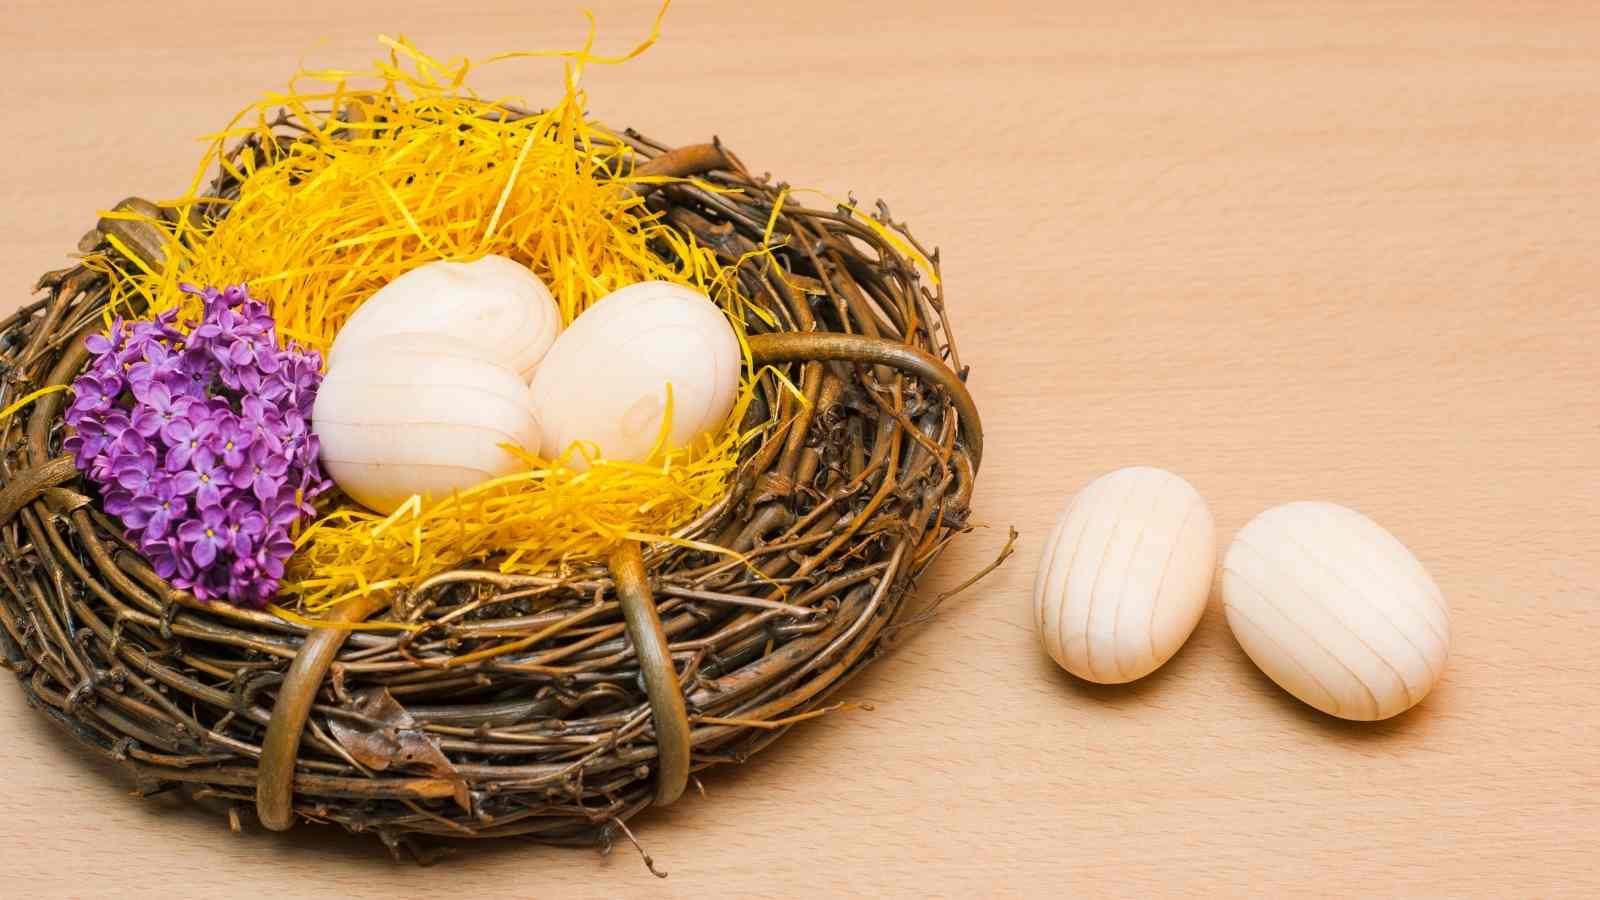 DIY Easter Egg Decor